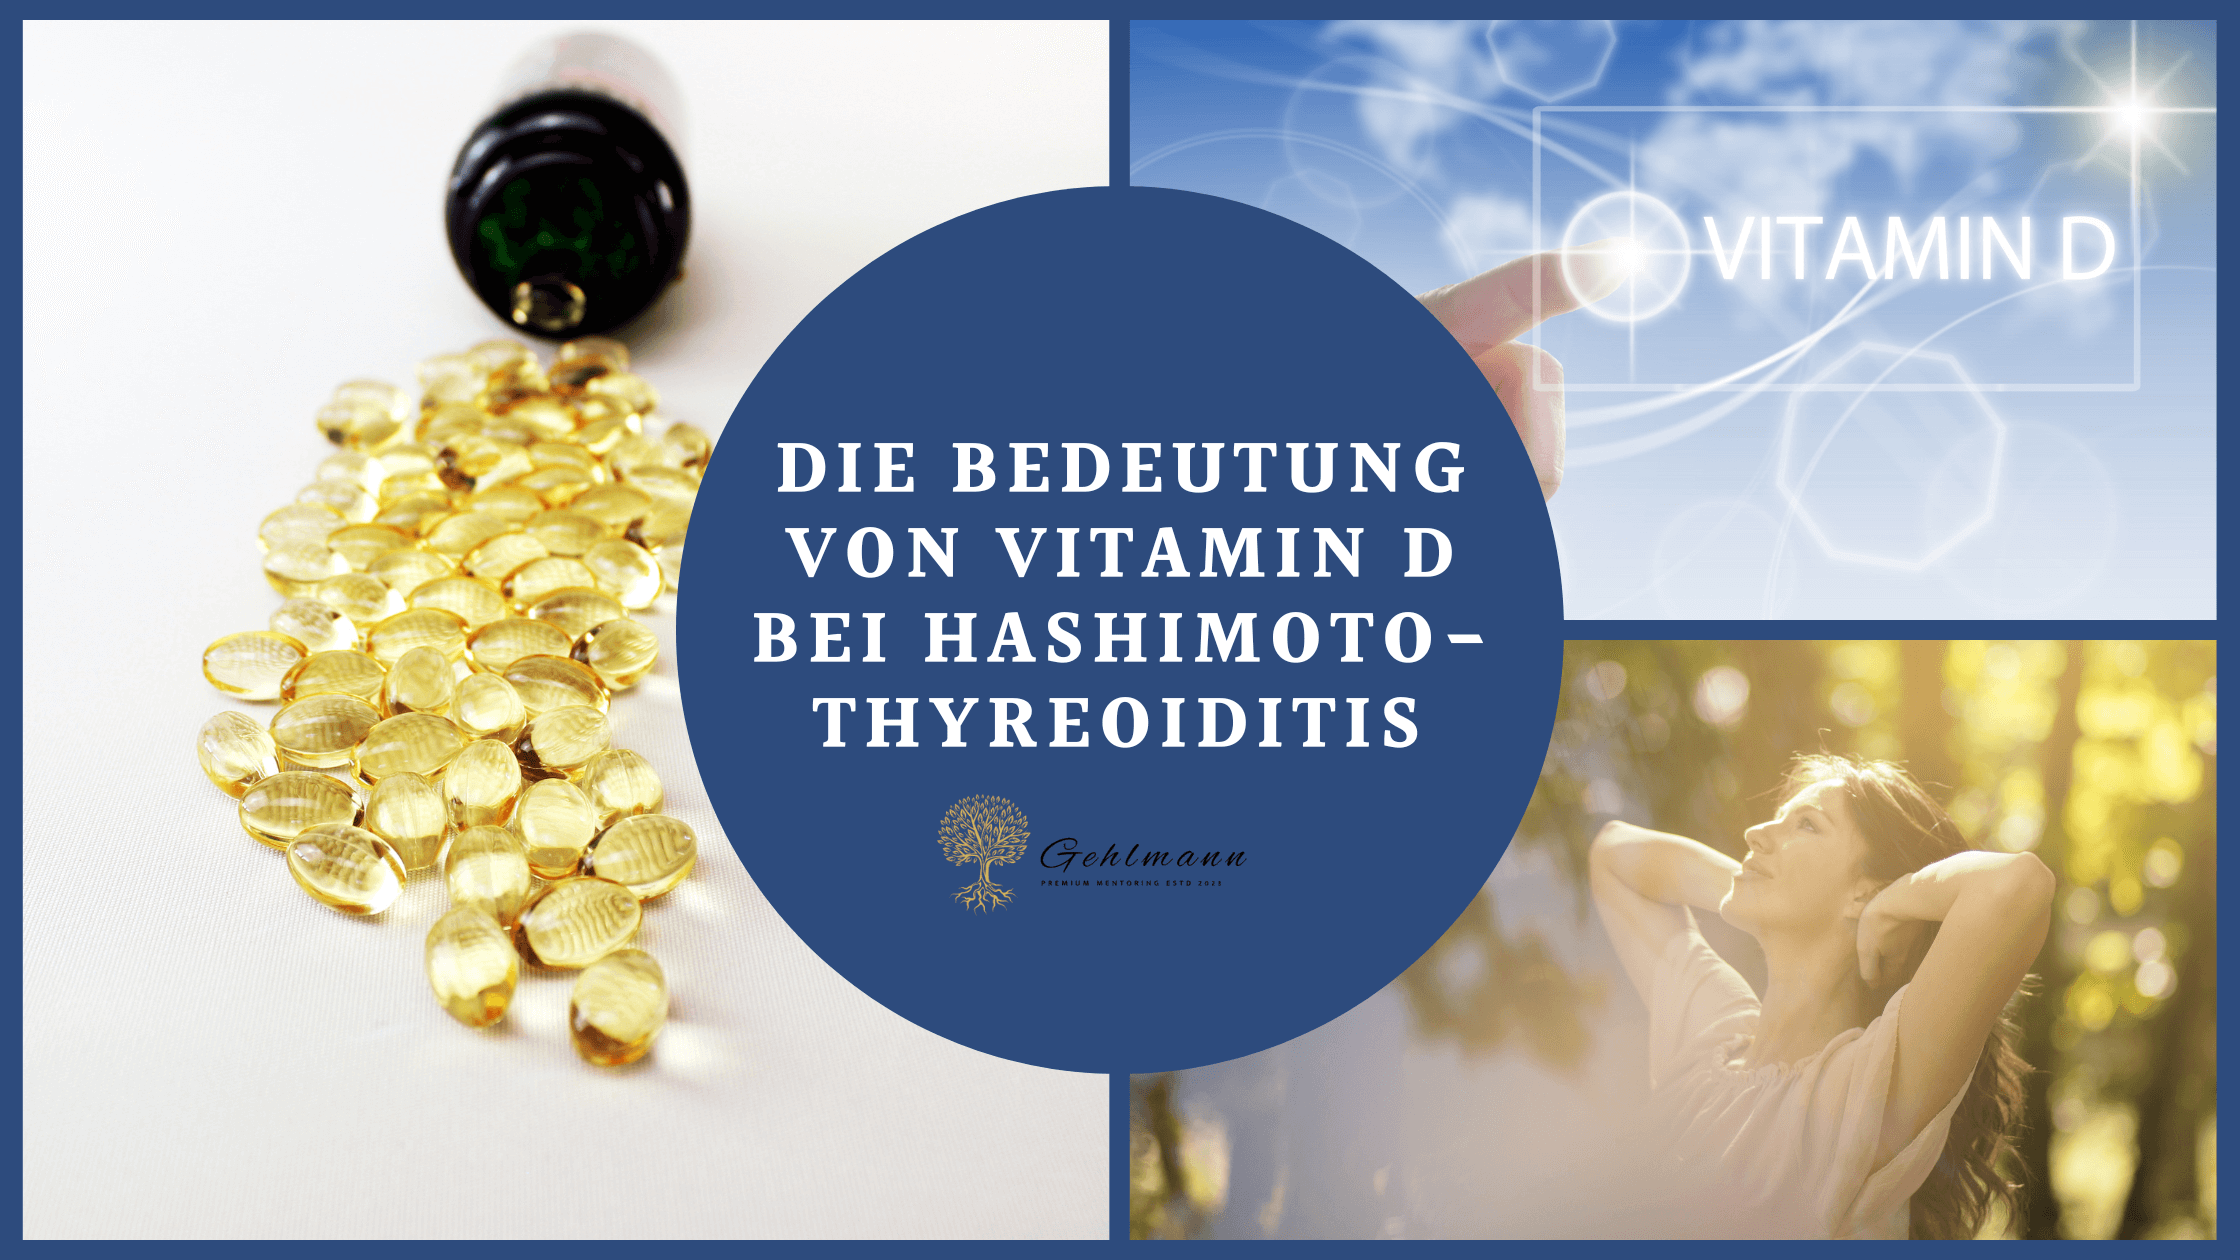 Vitamin D bei Hashimoto-Thyreoiditis